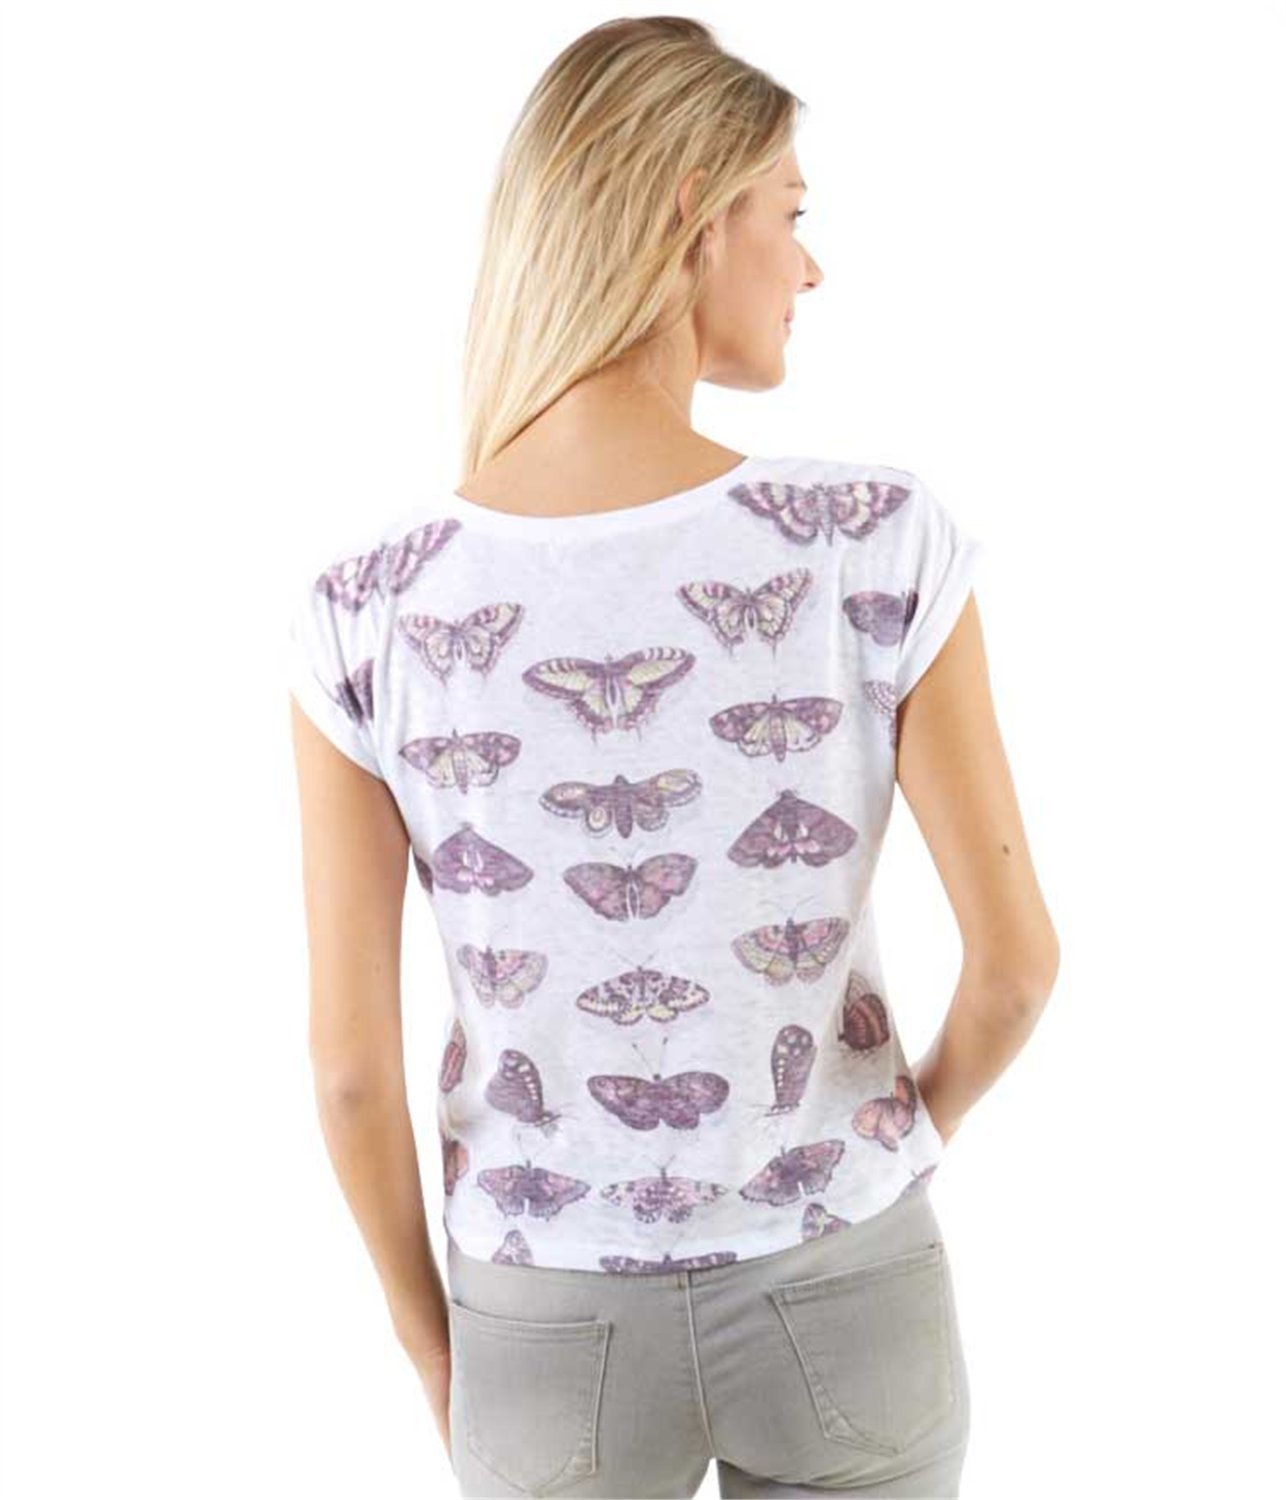 Camaieu női pillangós t-shirt 2015 fotója